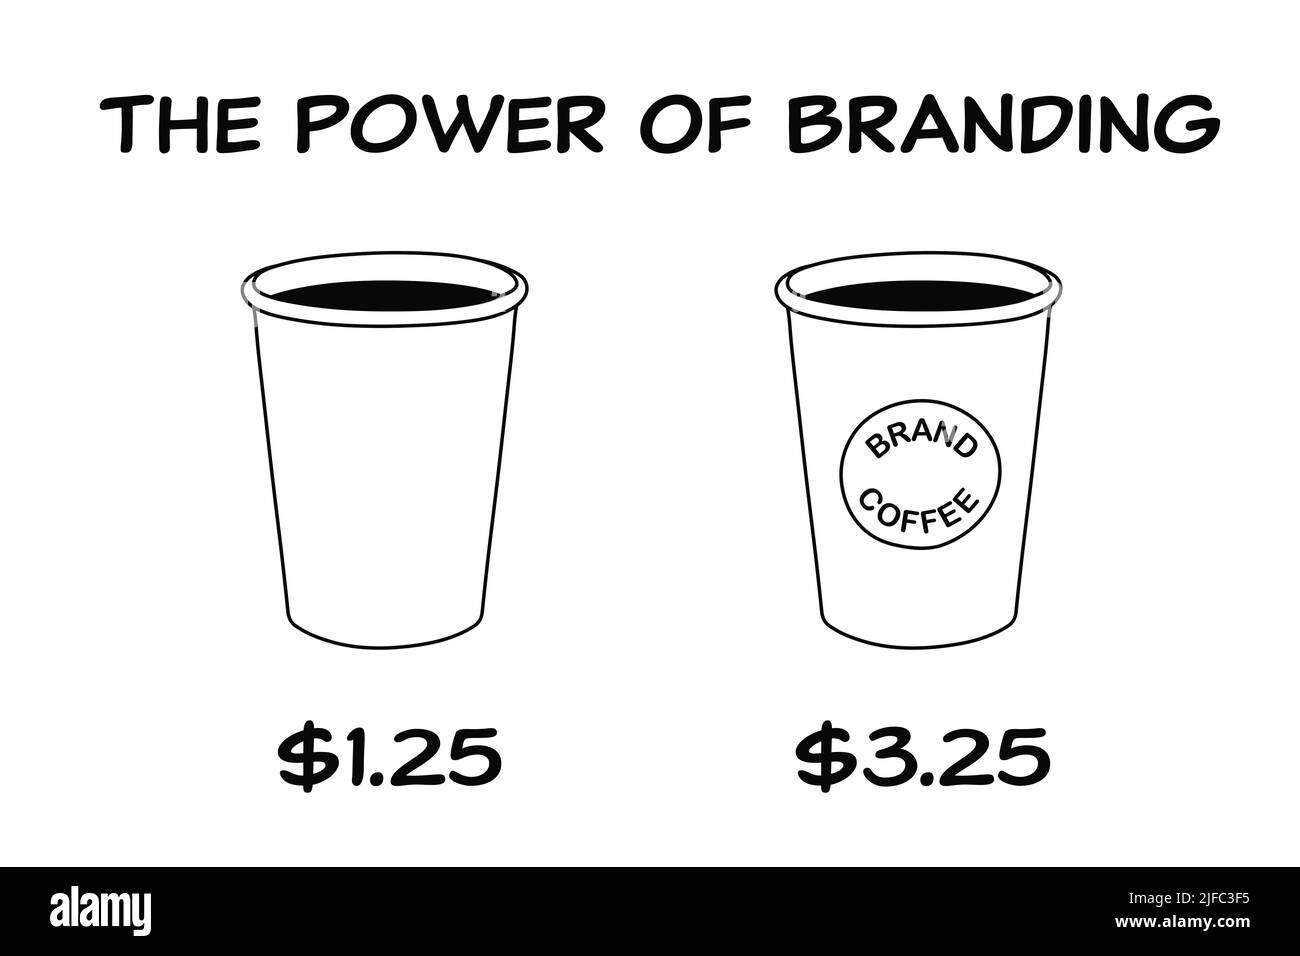 Concepto de negocio sobre el poder de la marca con dos tazas de café una marca y otra no marca con una gran diferencia de precio. Foto de stock